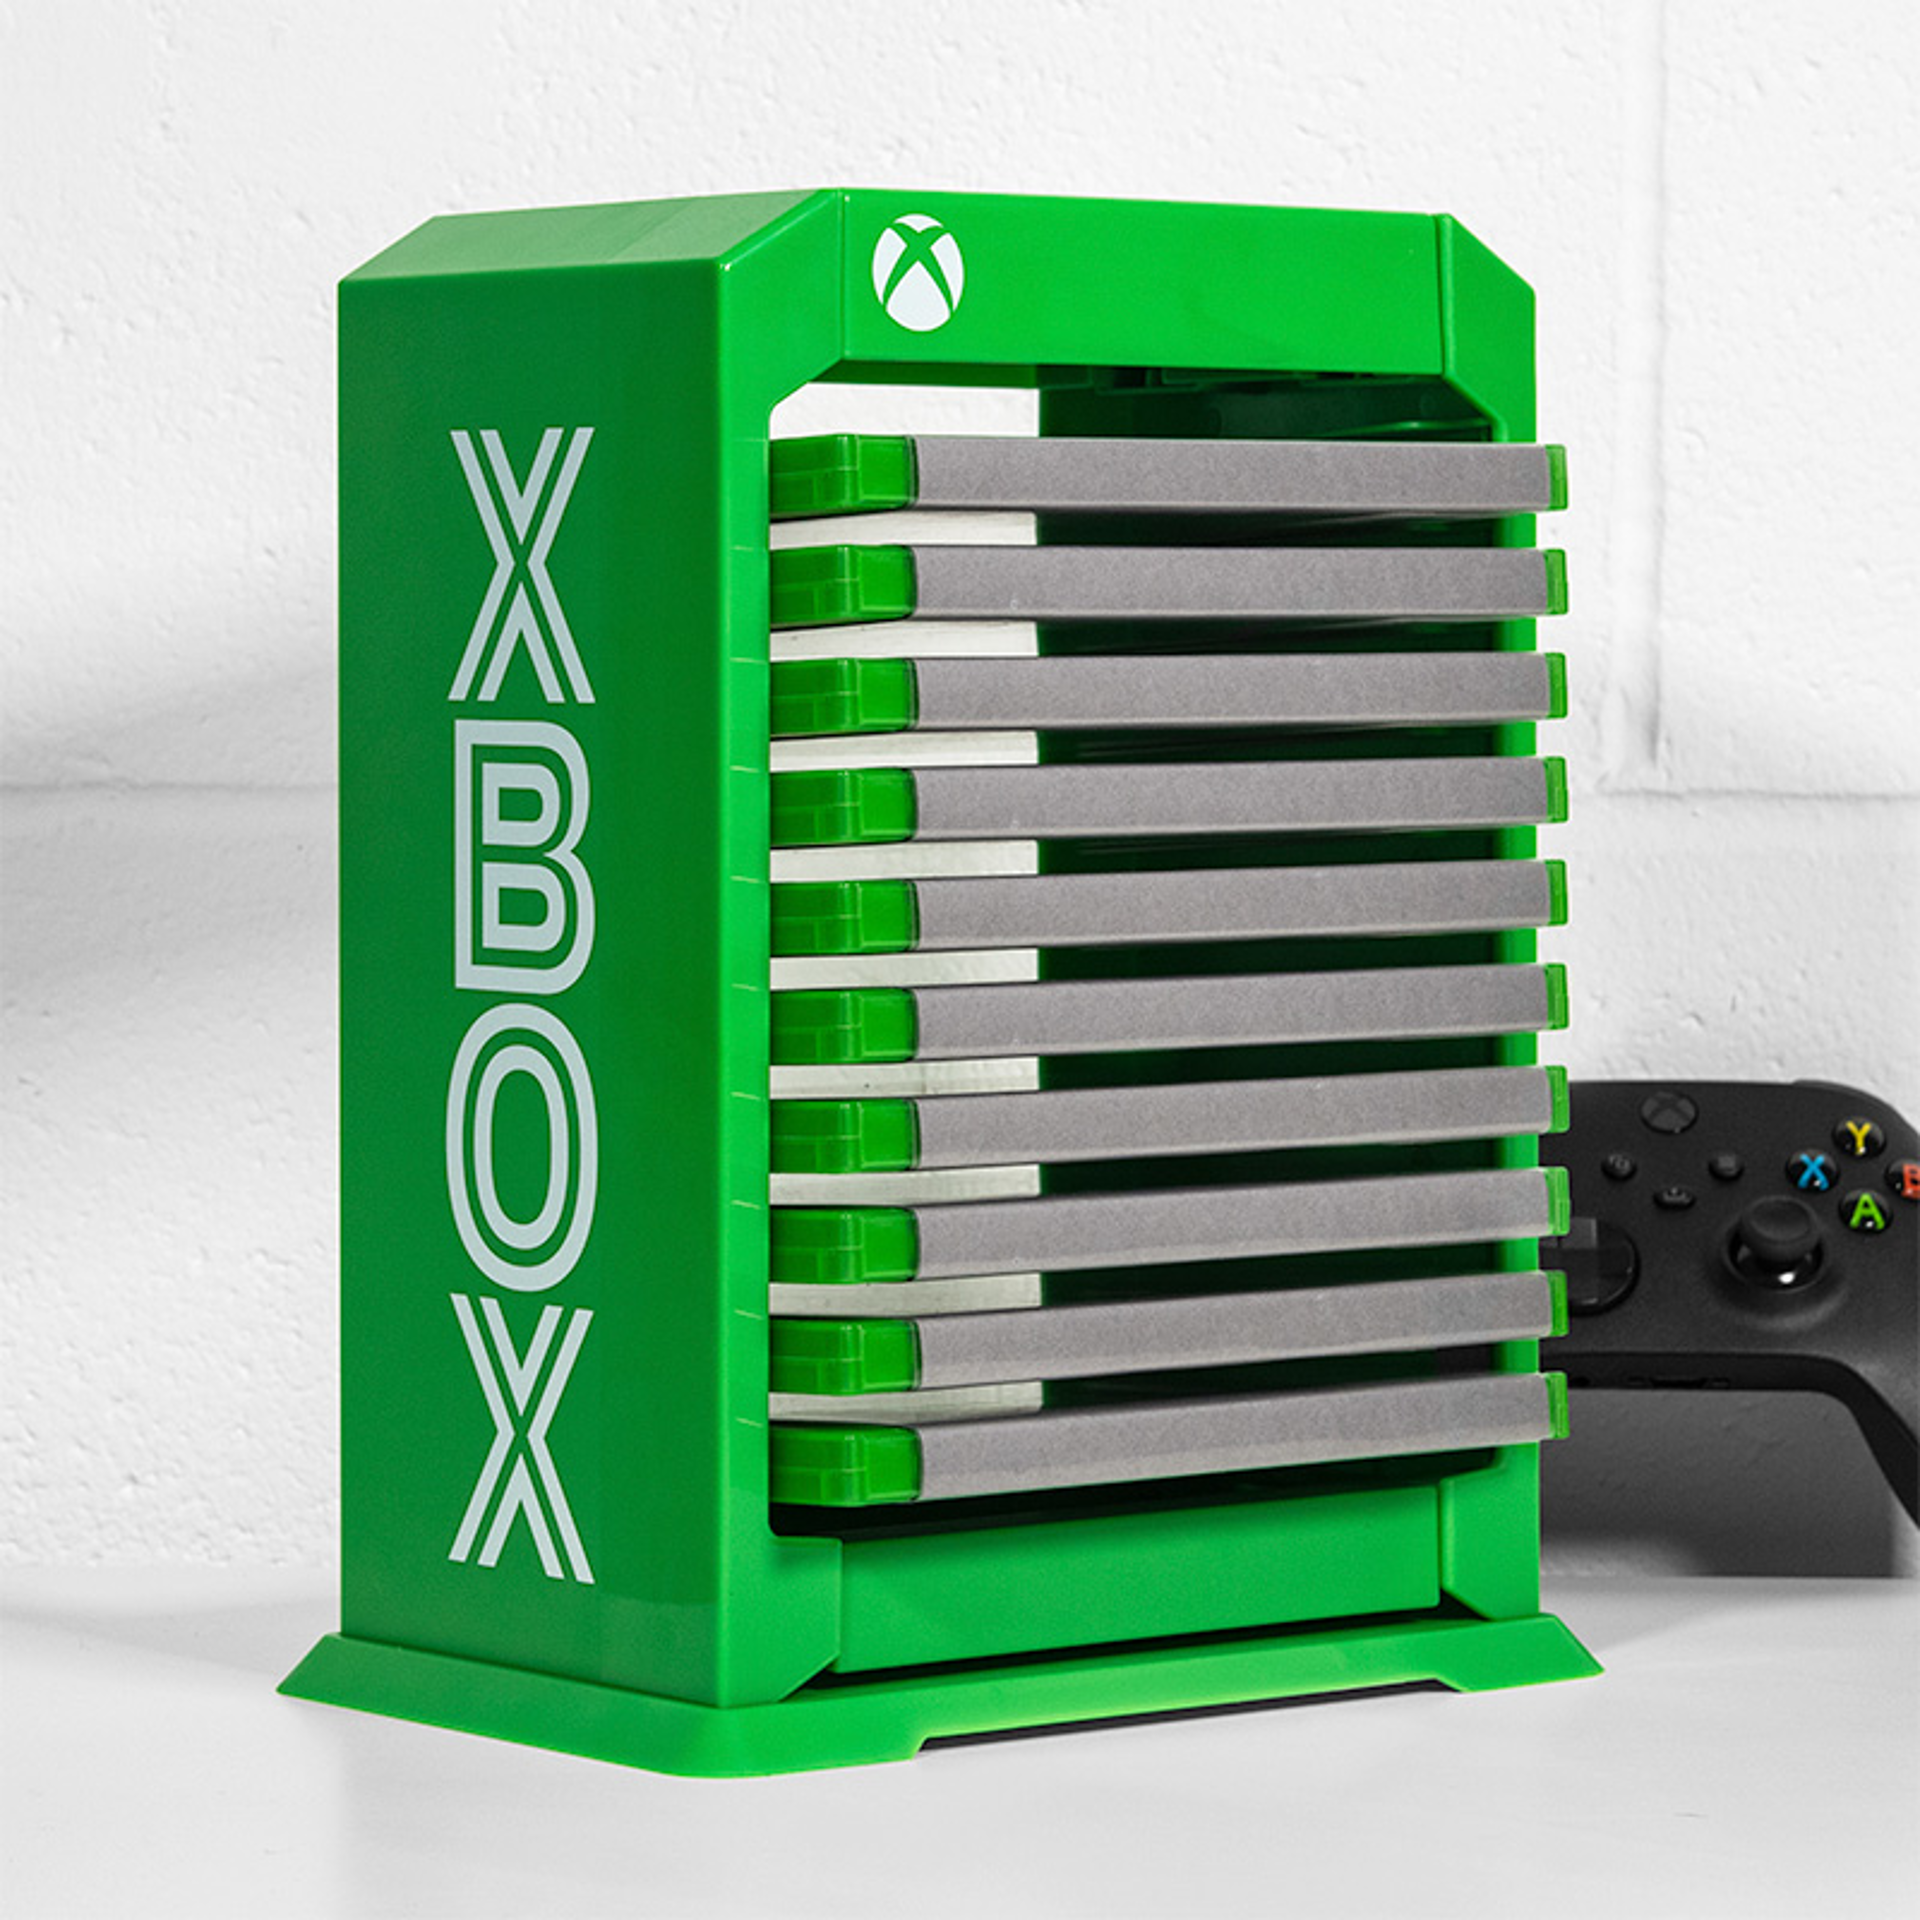 Xbox - Tour de stockage pour jeux haut de gamme officielle Logo